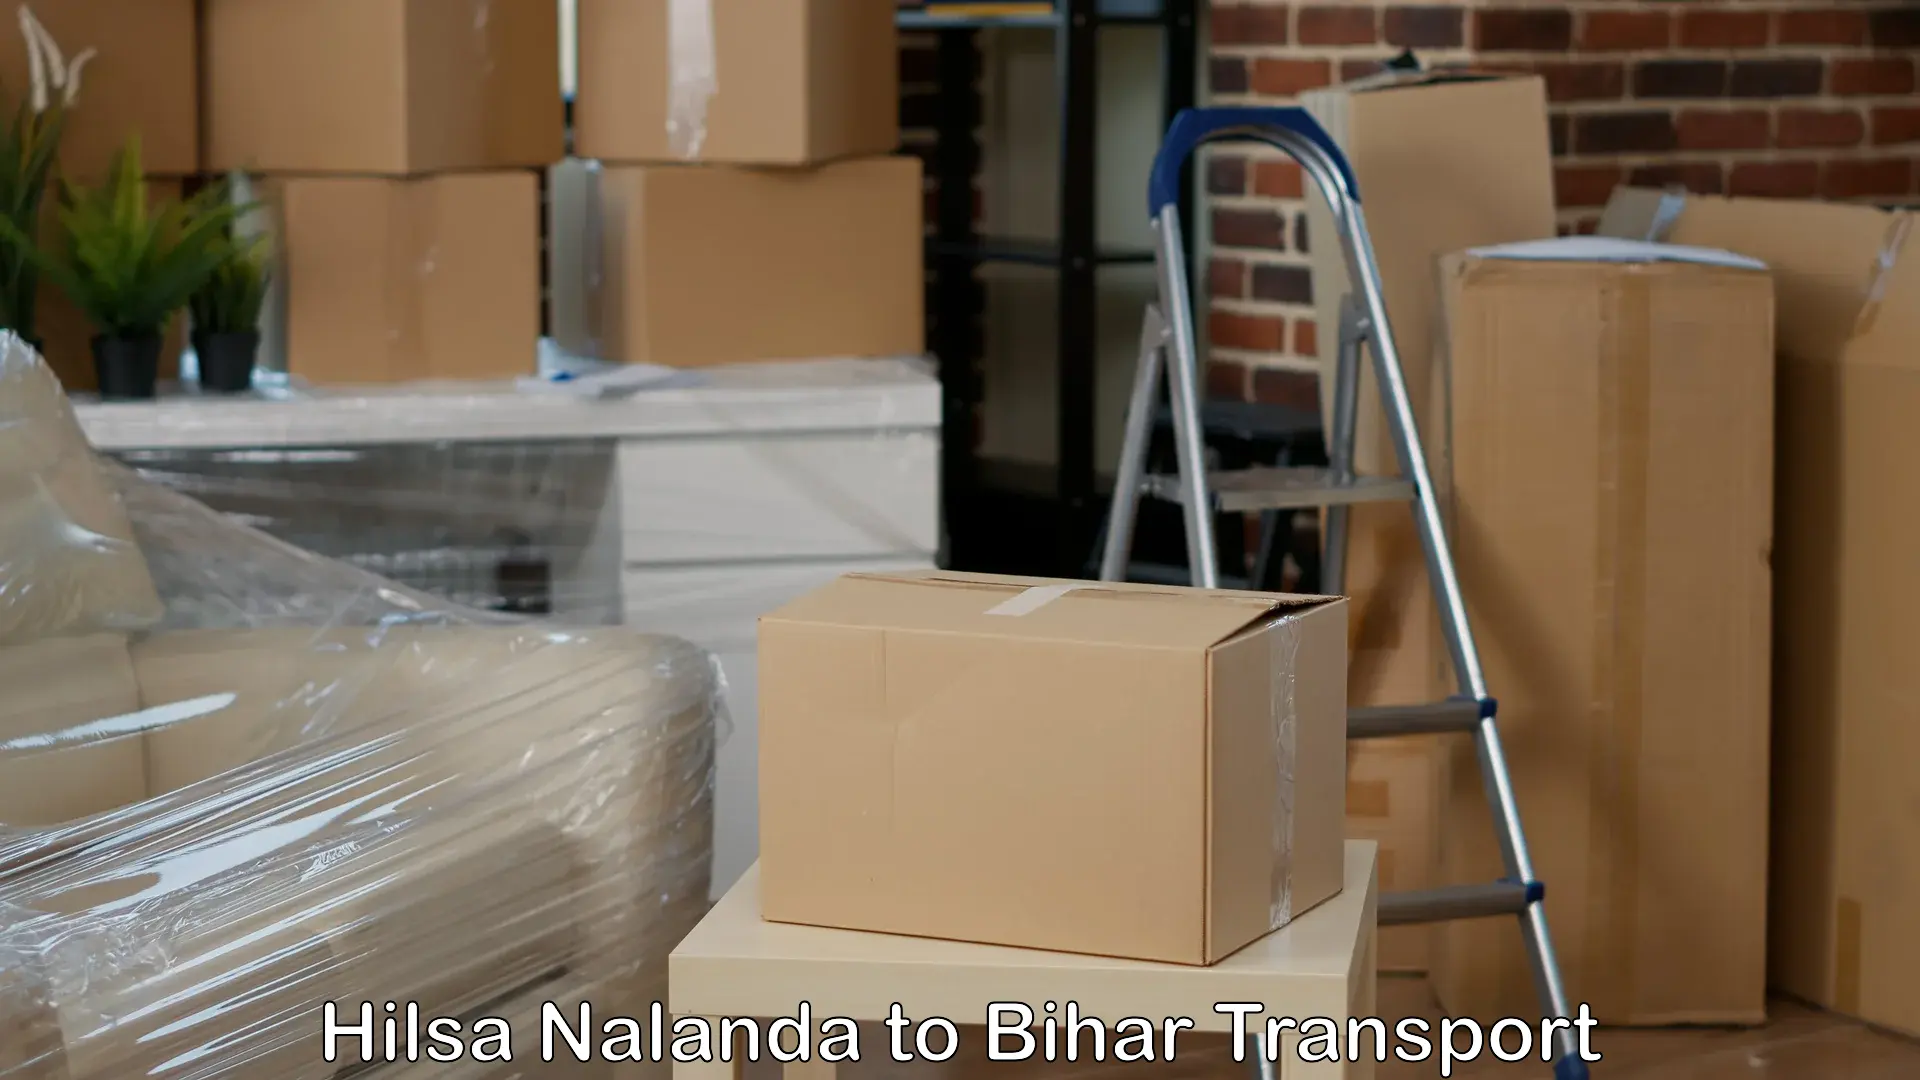 Road transport online services Hilsa Nalanda to Bikramganj